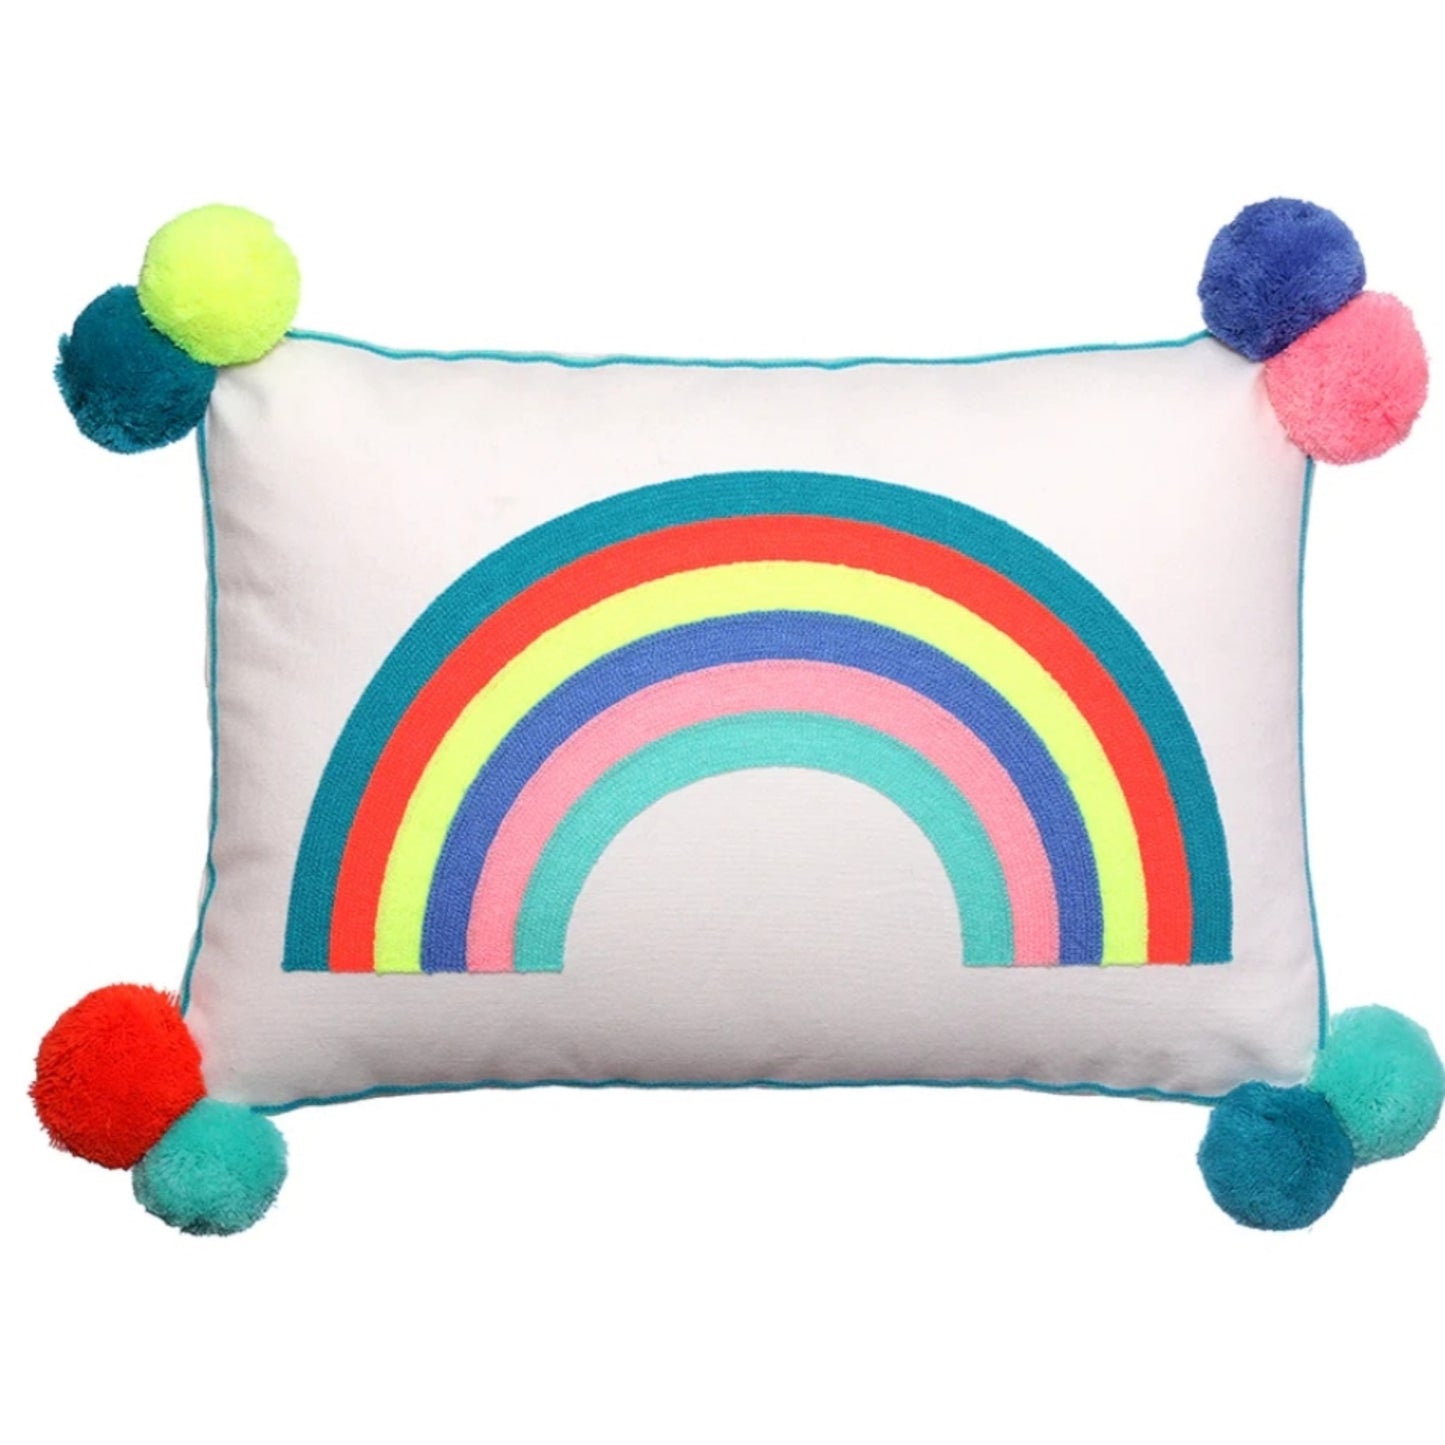 Over The Rainbow Rectangular Cushion